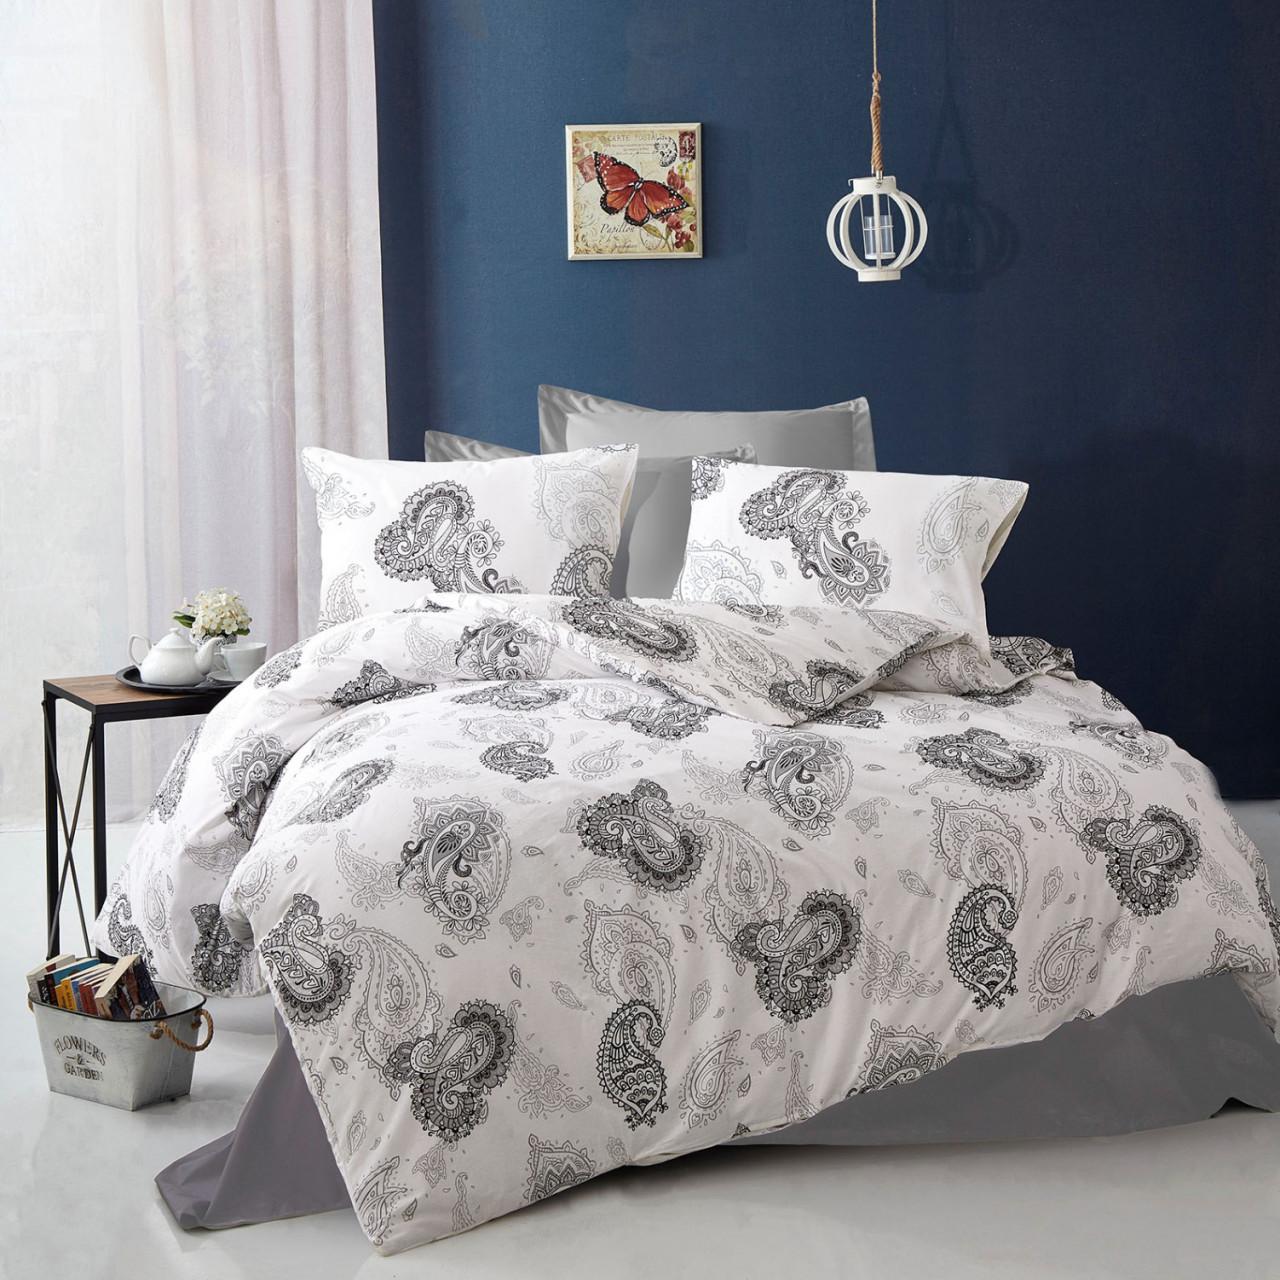 Selected image for Mille Notti Mystic Monochrome Pamučna posteljina za bračni ležaj, 200x220 cm, Belo-siva